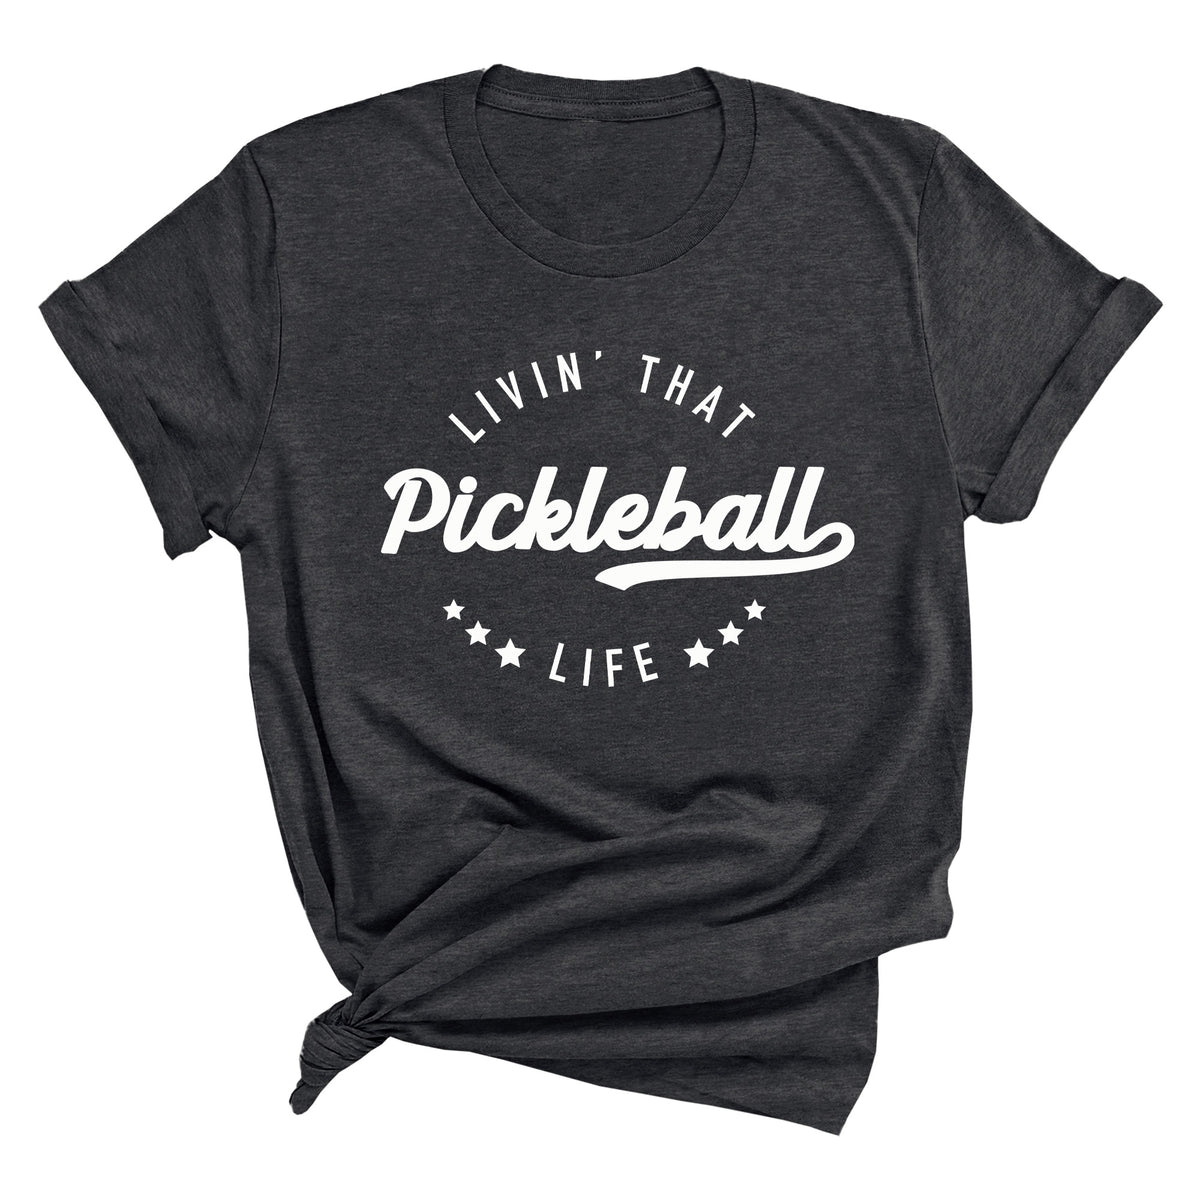 Livin' That Pickleball Life Unisex T-Shirt